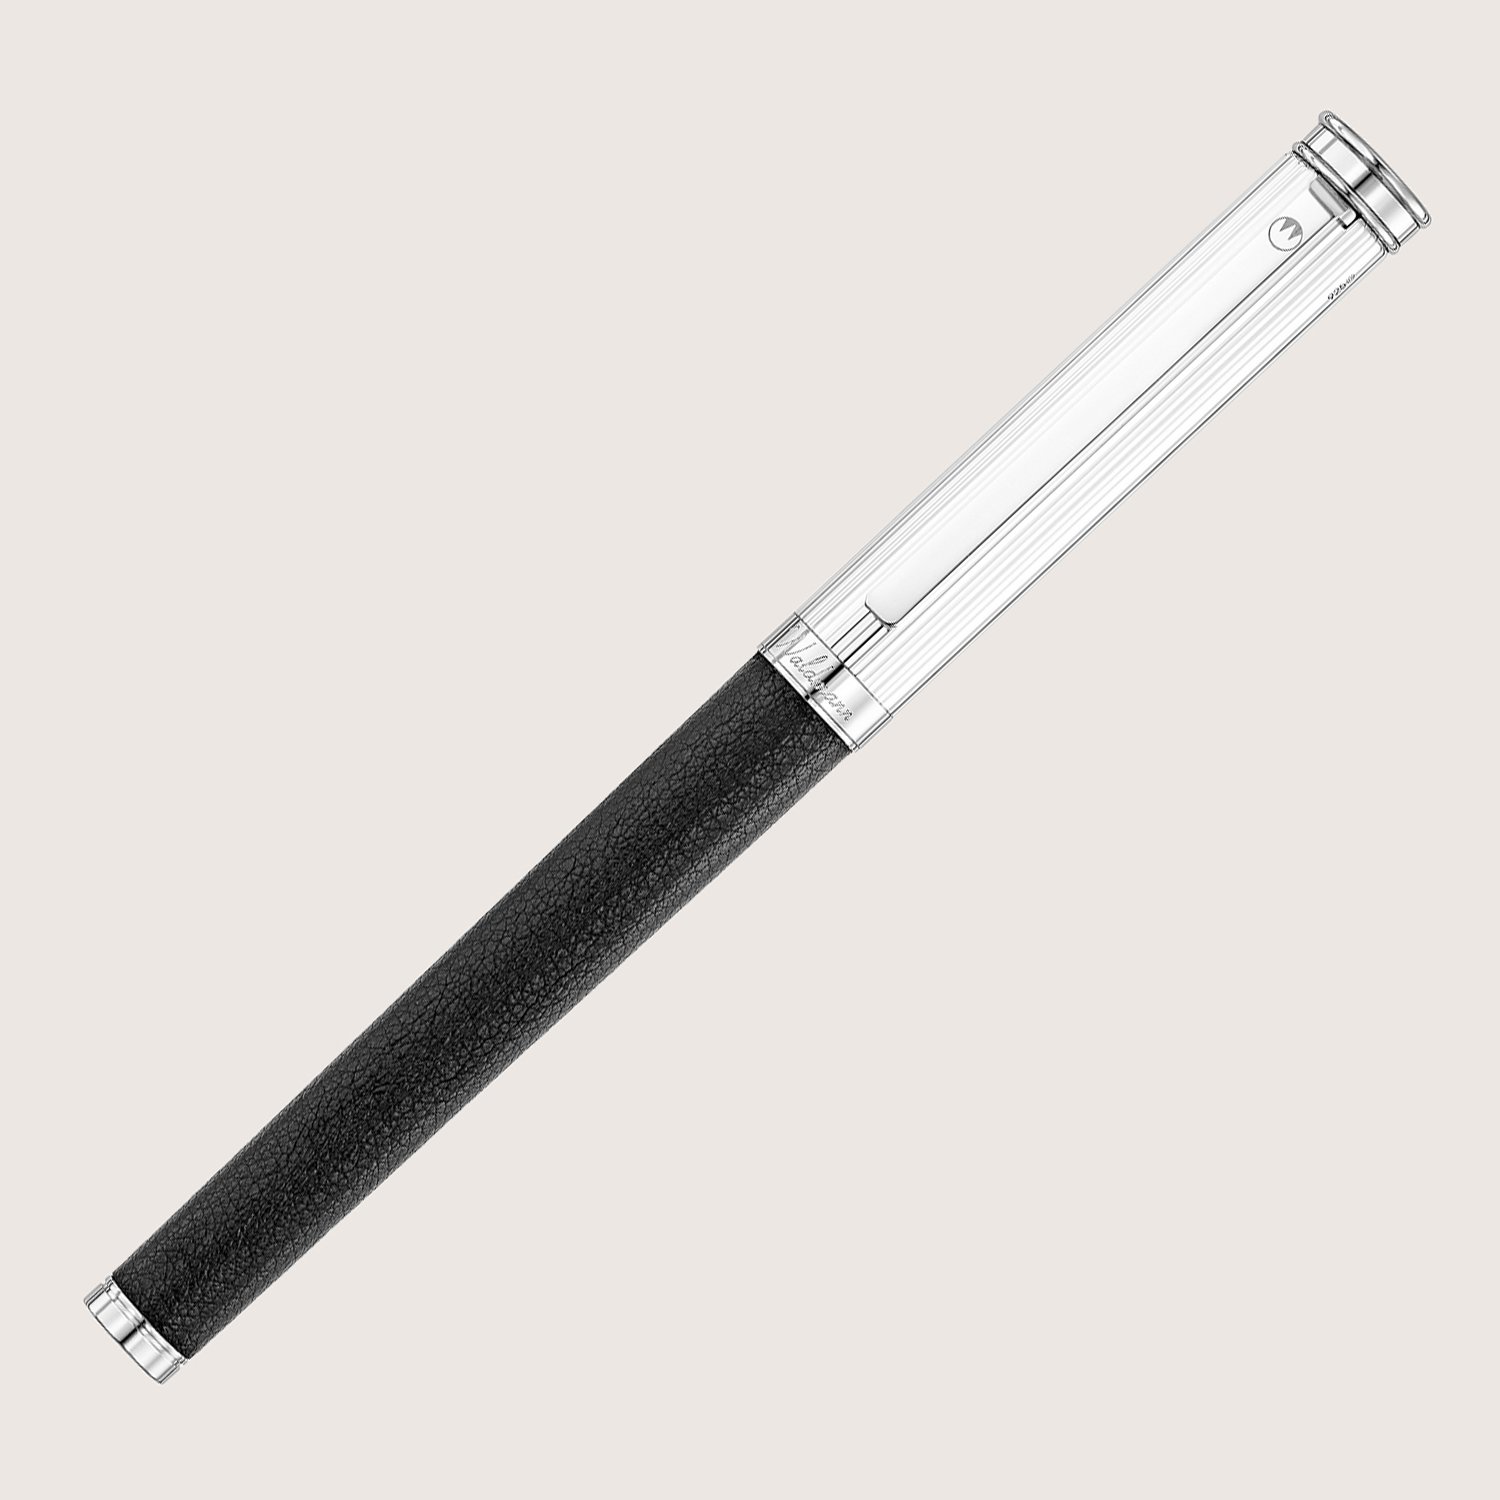 SOLON Füllfederhalter mit Edelstahlfeder EF Silber Linien-Design Nappaleder schwarz